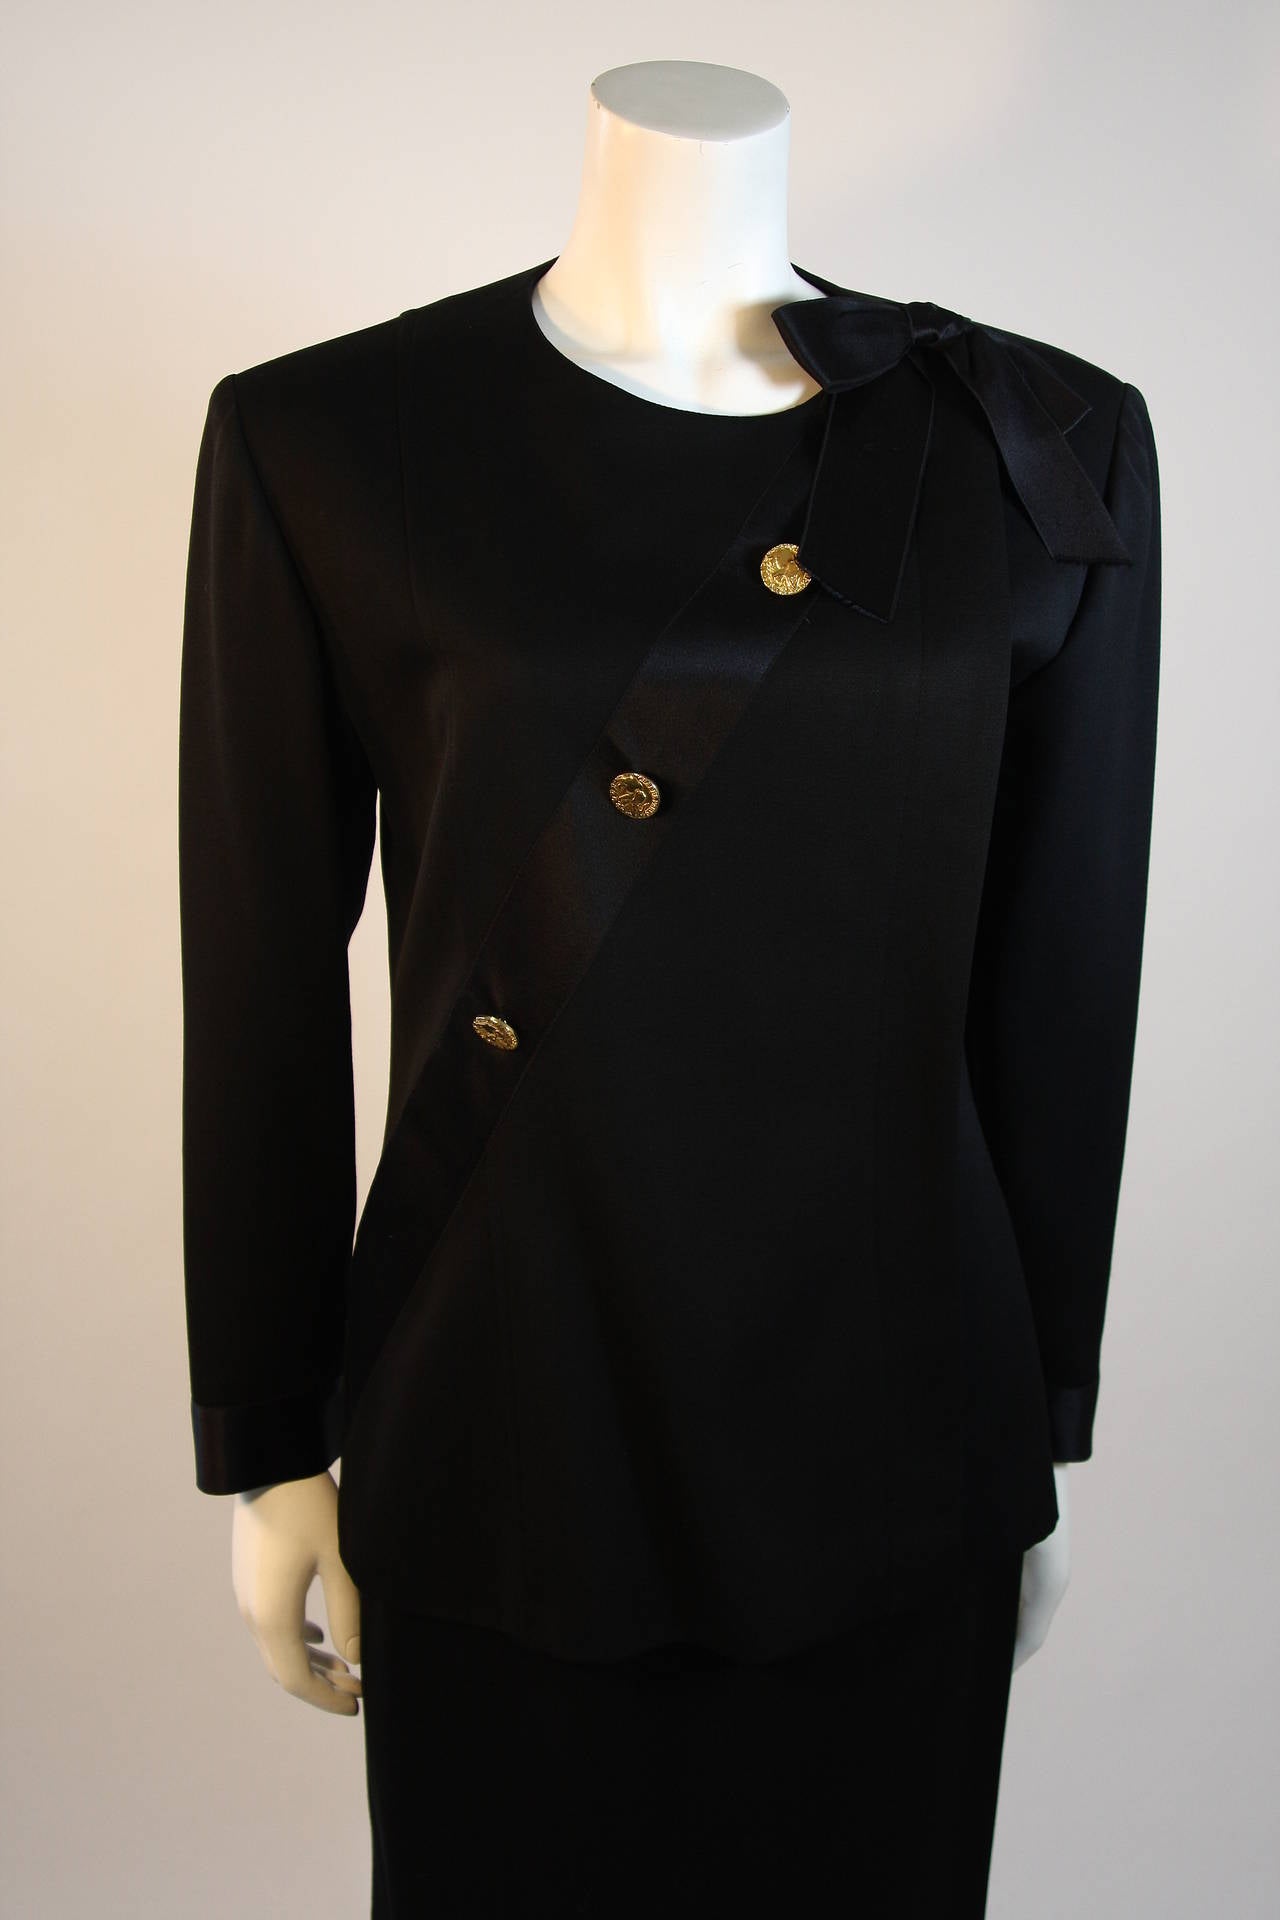 Veste en laine noire avec patte de boutonnage cachée sur le côté gauche, ruban croisé en satin de soie noir orné de boutons Chanel Paris embossés d'éléphants dorés, terminé par un nœud à l'épaule gauche. Les poignets de la veste sont également